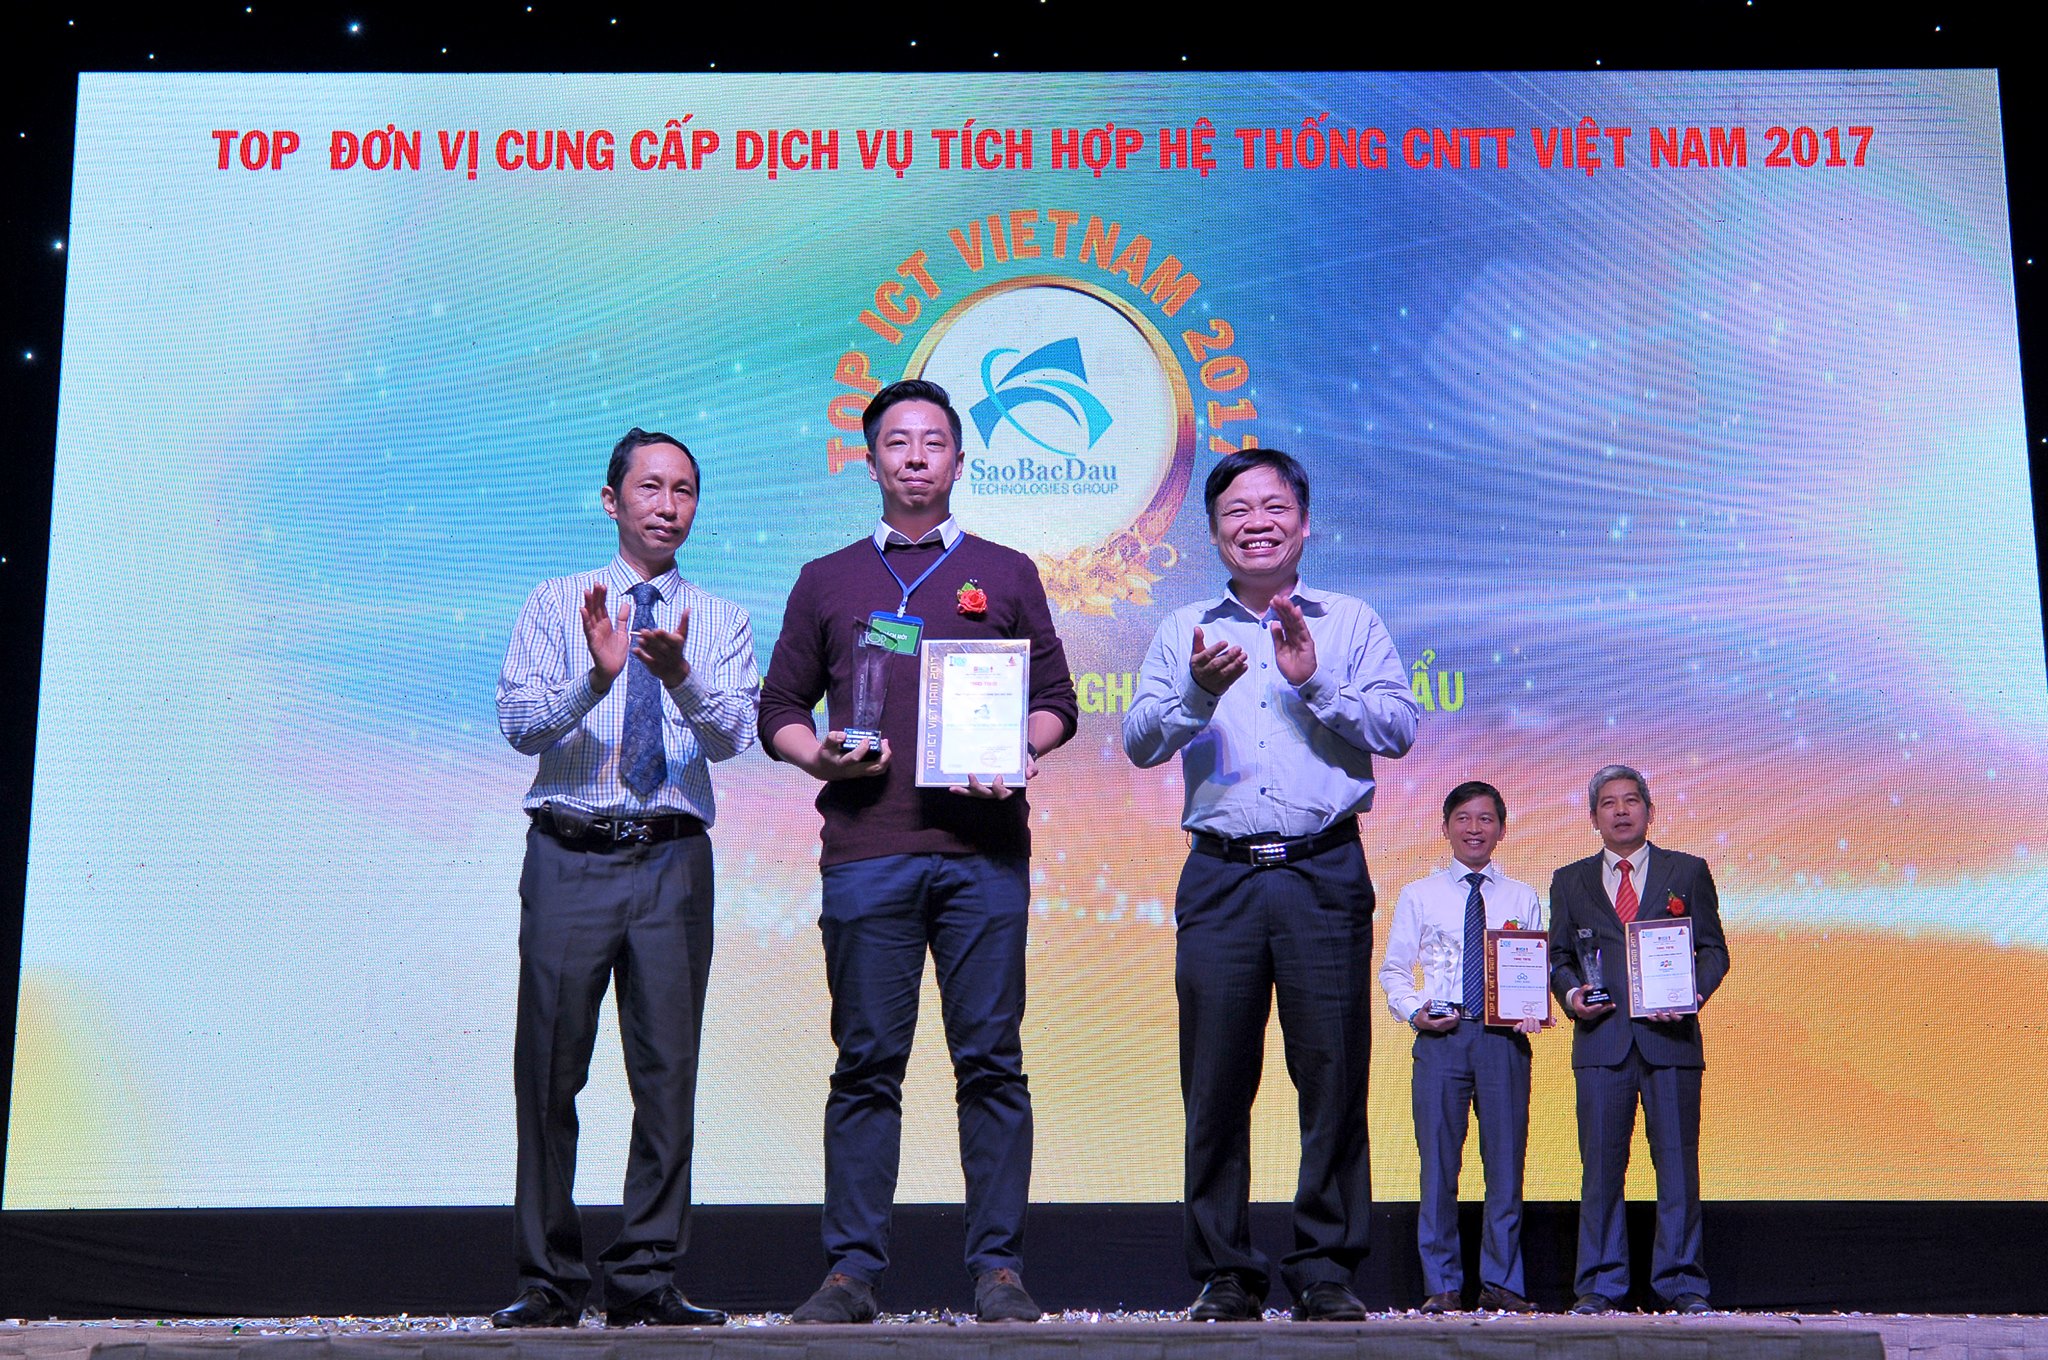 Sao Bắc Đẩu được vinh danh tại Top ICT Việt Nam 2017